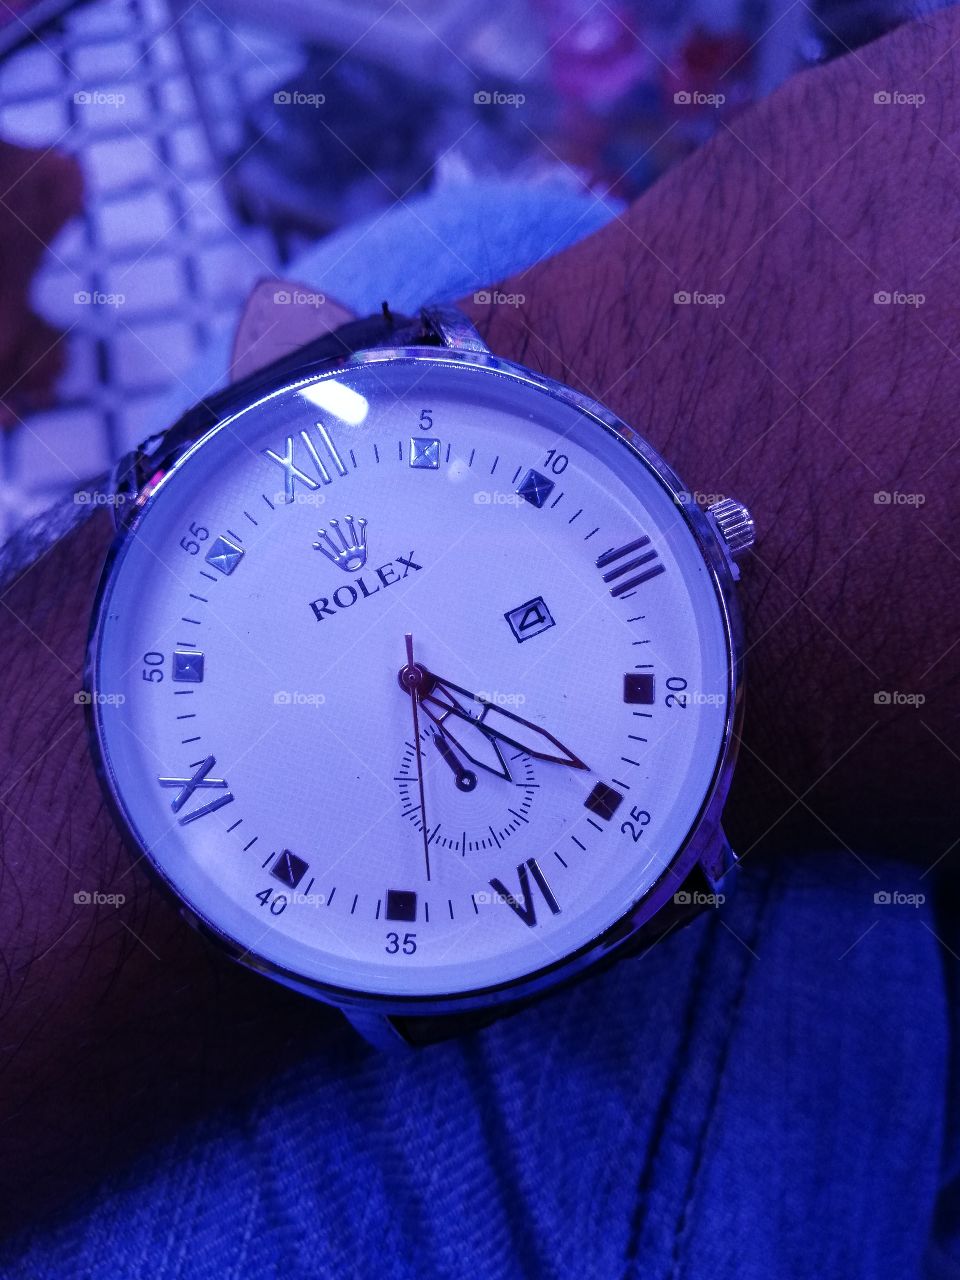 rolex brand watch